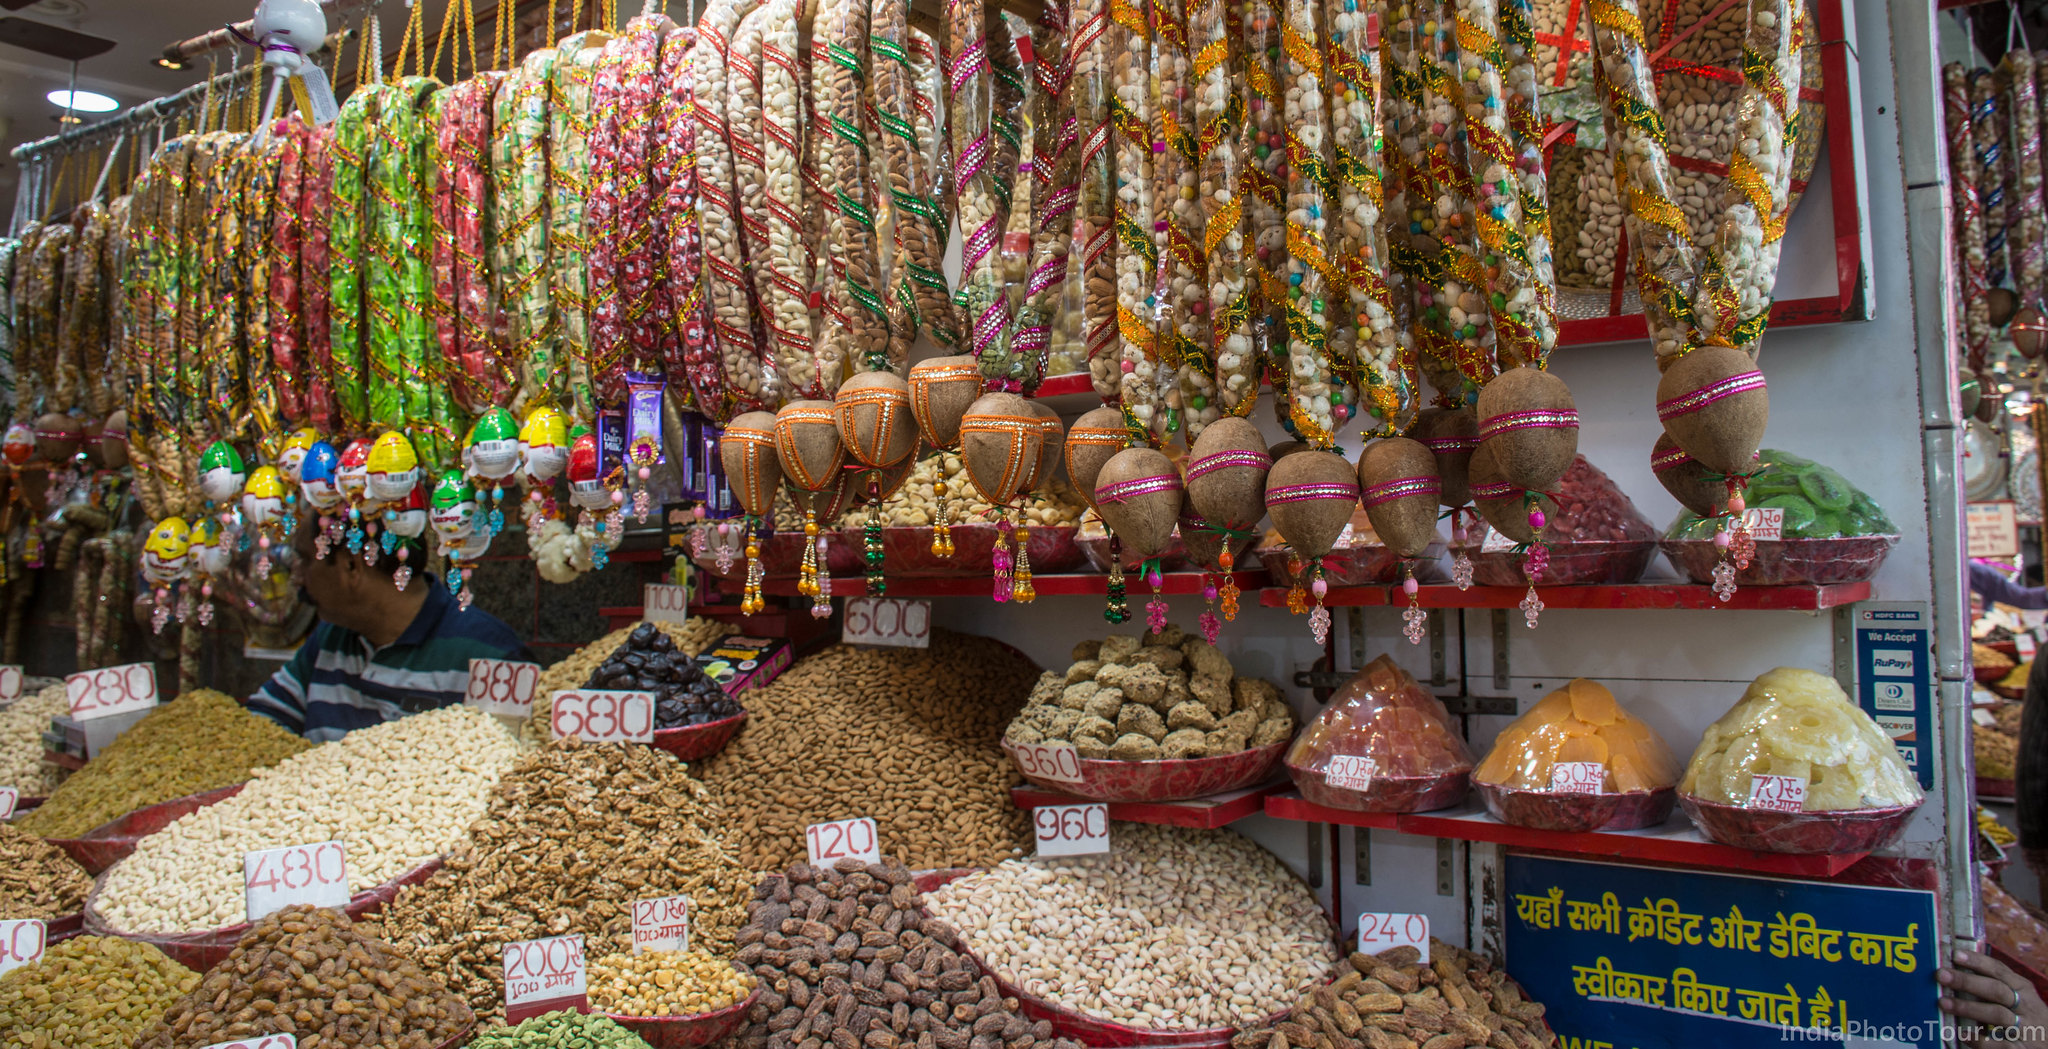 A scene in Old Delhi's spice market